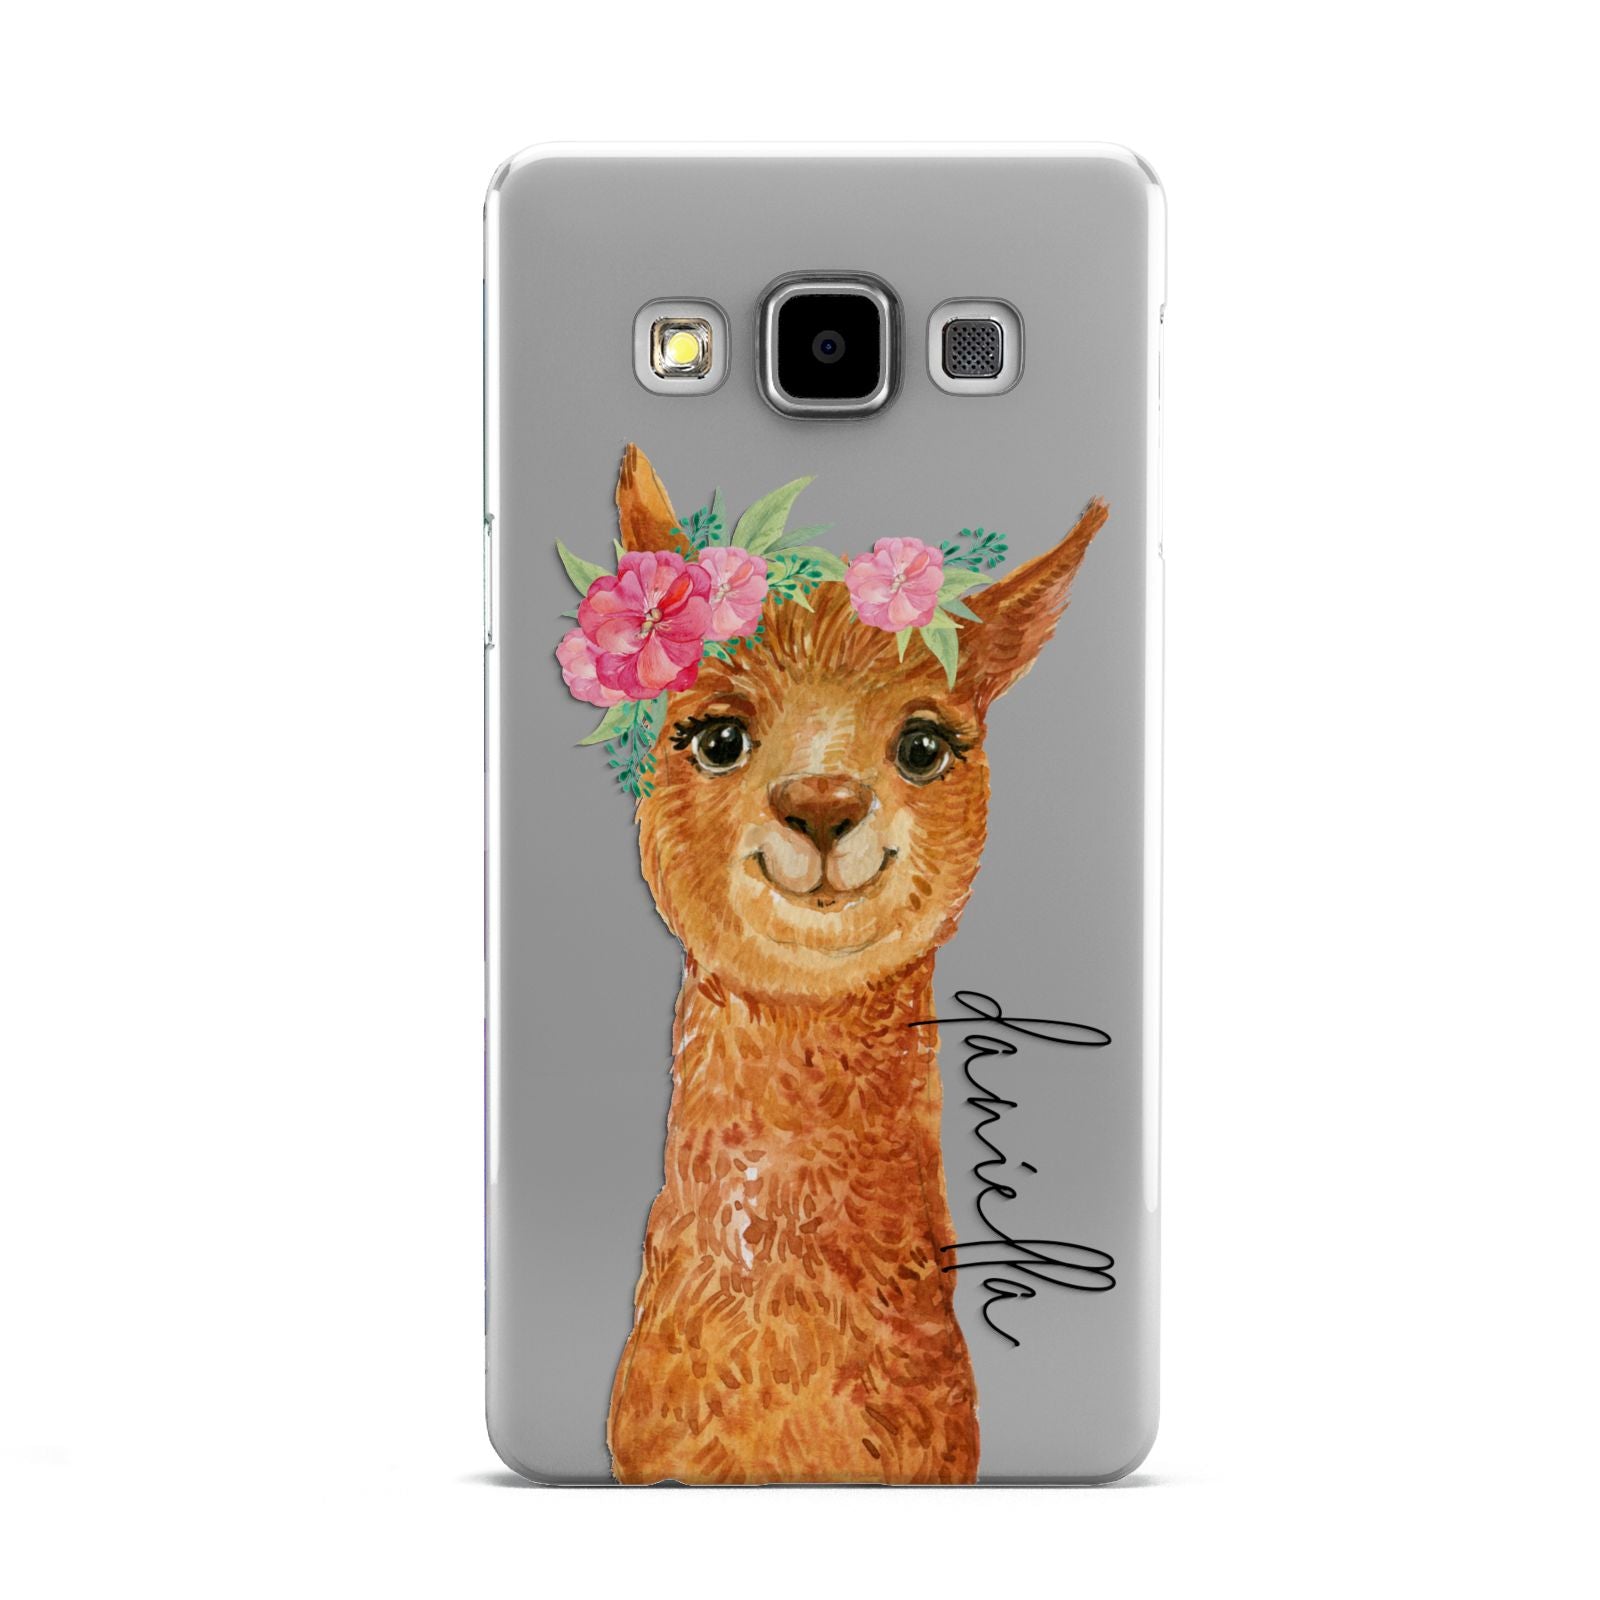 Personalised Llama Samsung Galaxy A5 Case